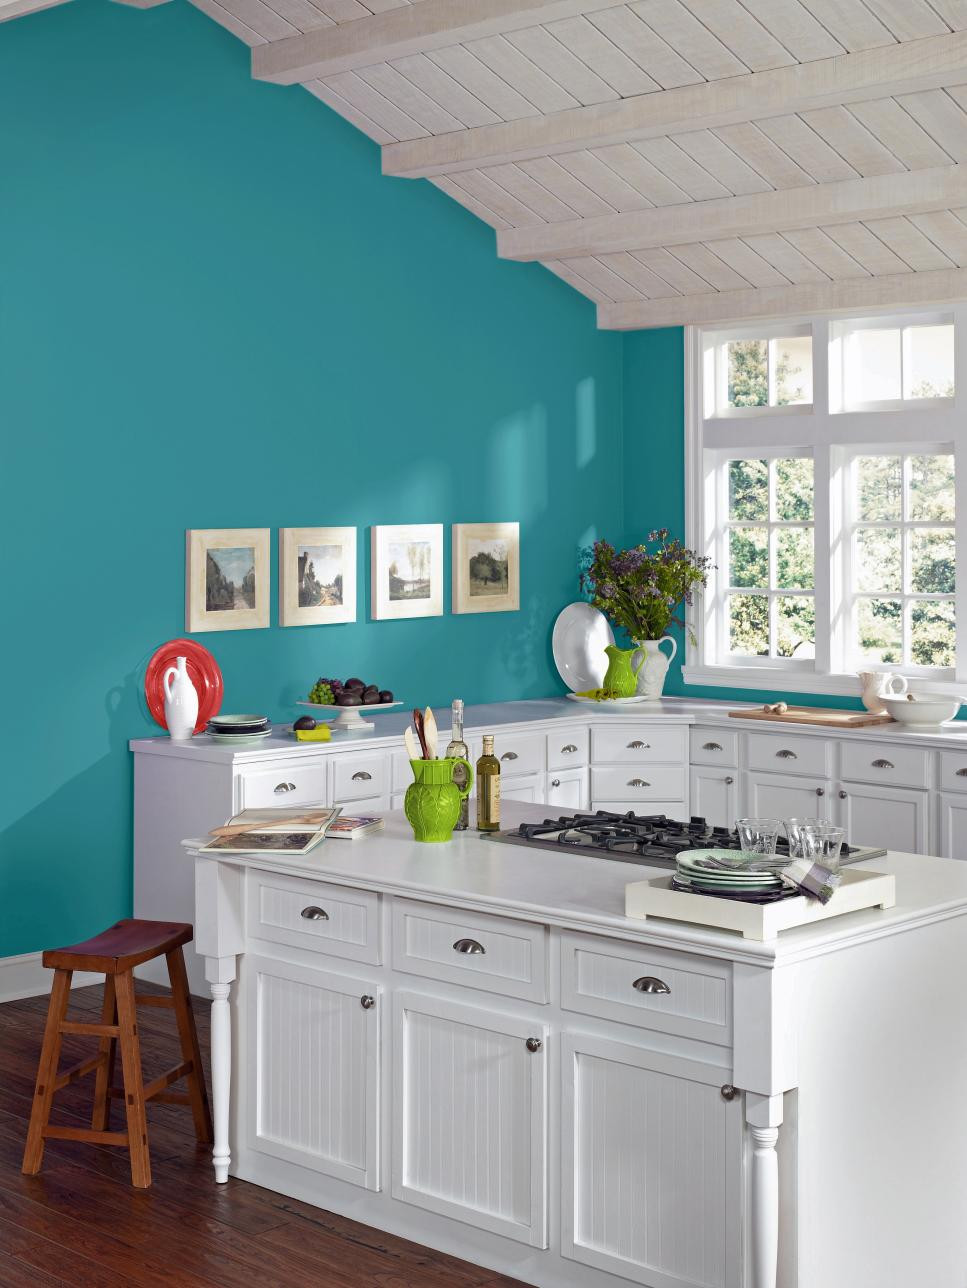 Kitchen Designs Vibrant Colors Kitchen Color Design Ideas